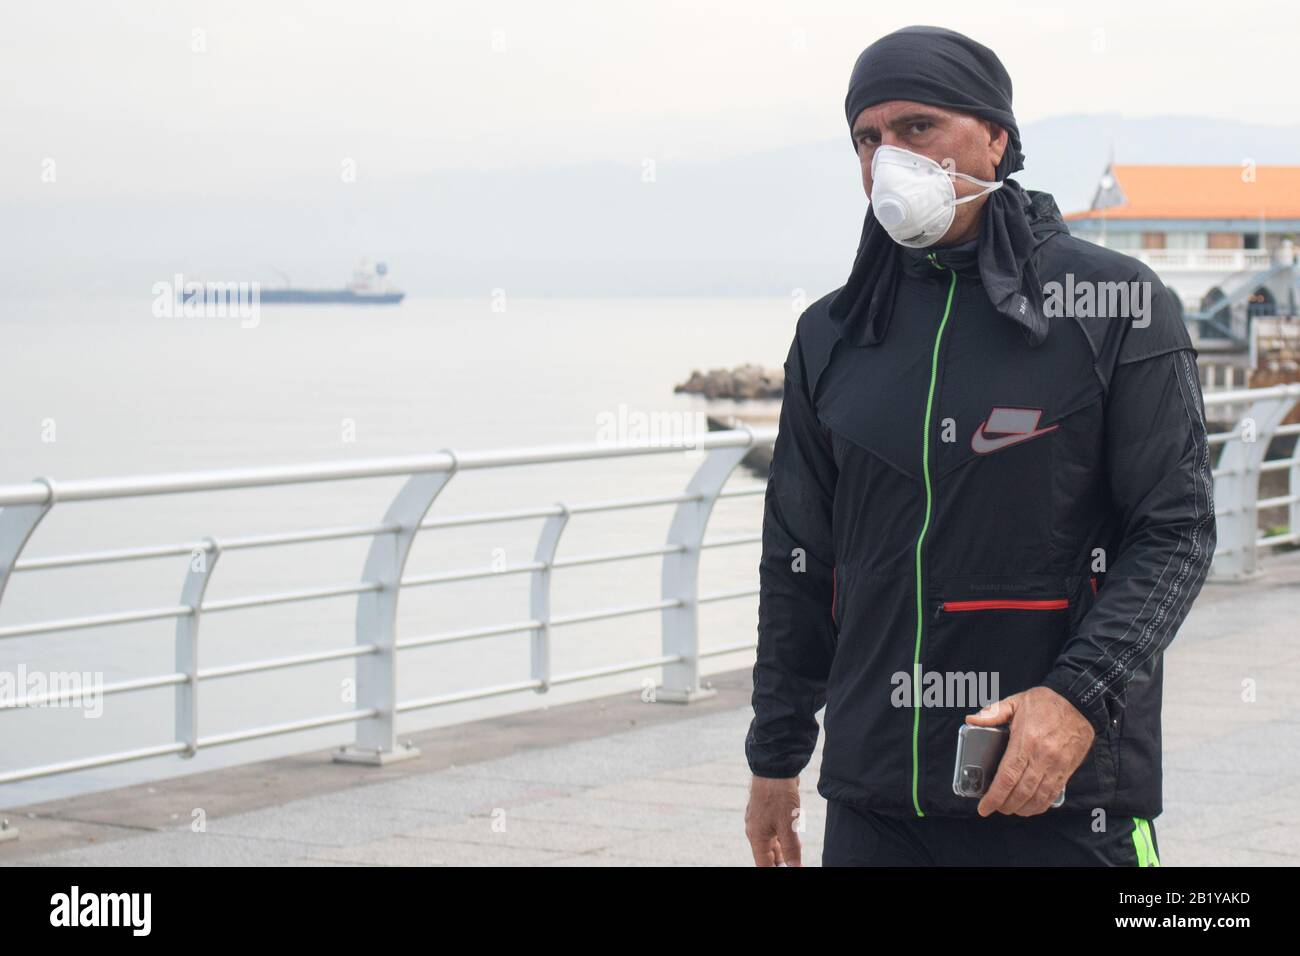 Beyrouth, Liban. 28 février 2020: Un homme marchant le long du front de mer de Beyrouth à Beyrouth portant un masque protecteur contre le coronavirus covid 19. Le ministère des transports a annoncé que le Liban a interrompu les vols pour les non-résidents en provenance de pays aux flambées de coronavirus, notamment la Chine, l'Iran, l'Italie et la Corée du Sud. Crédit: Amer ghazzal/Alay Live News Banque D'Images